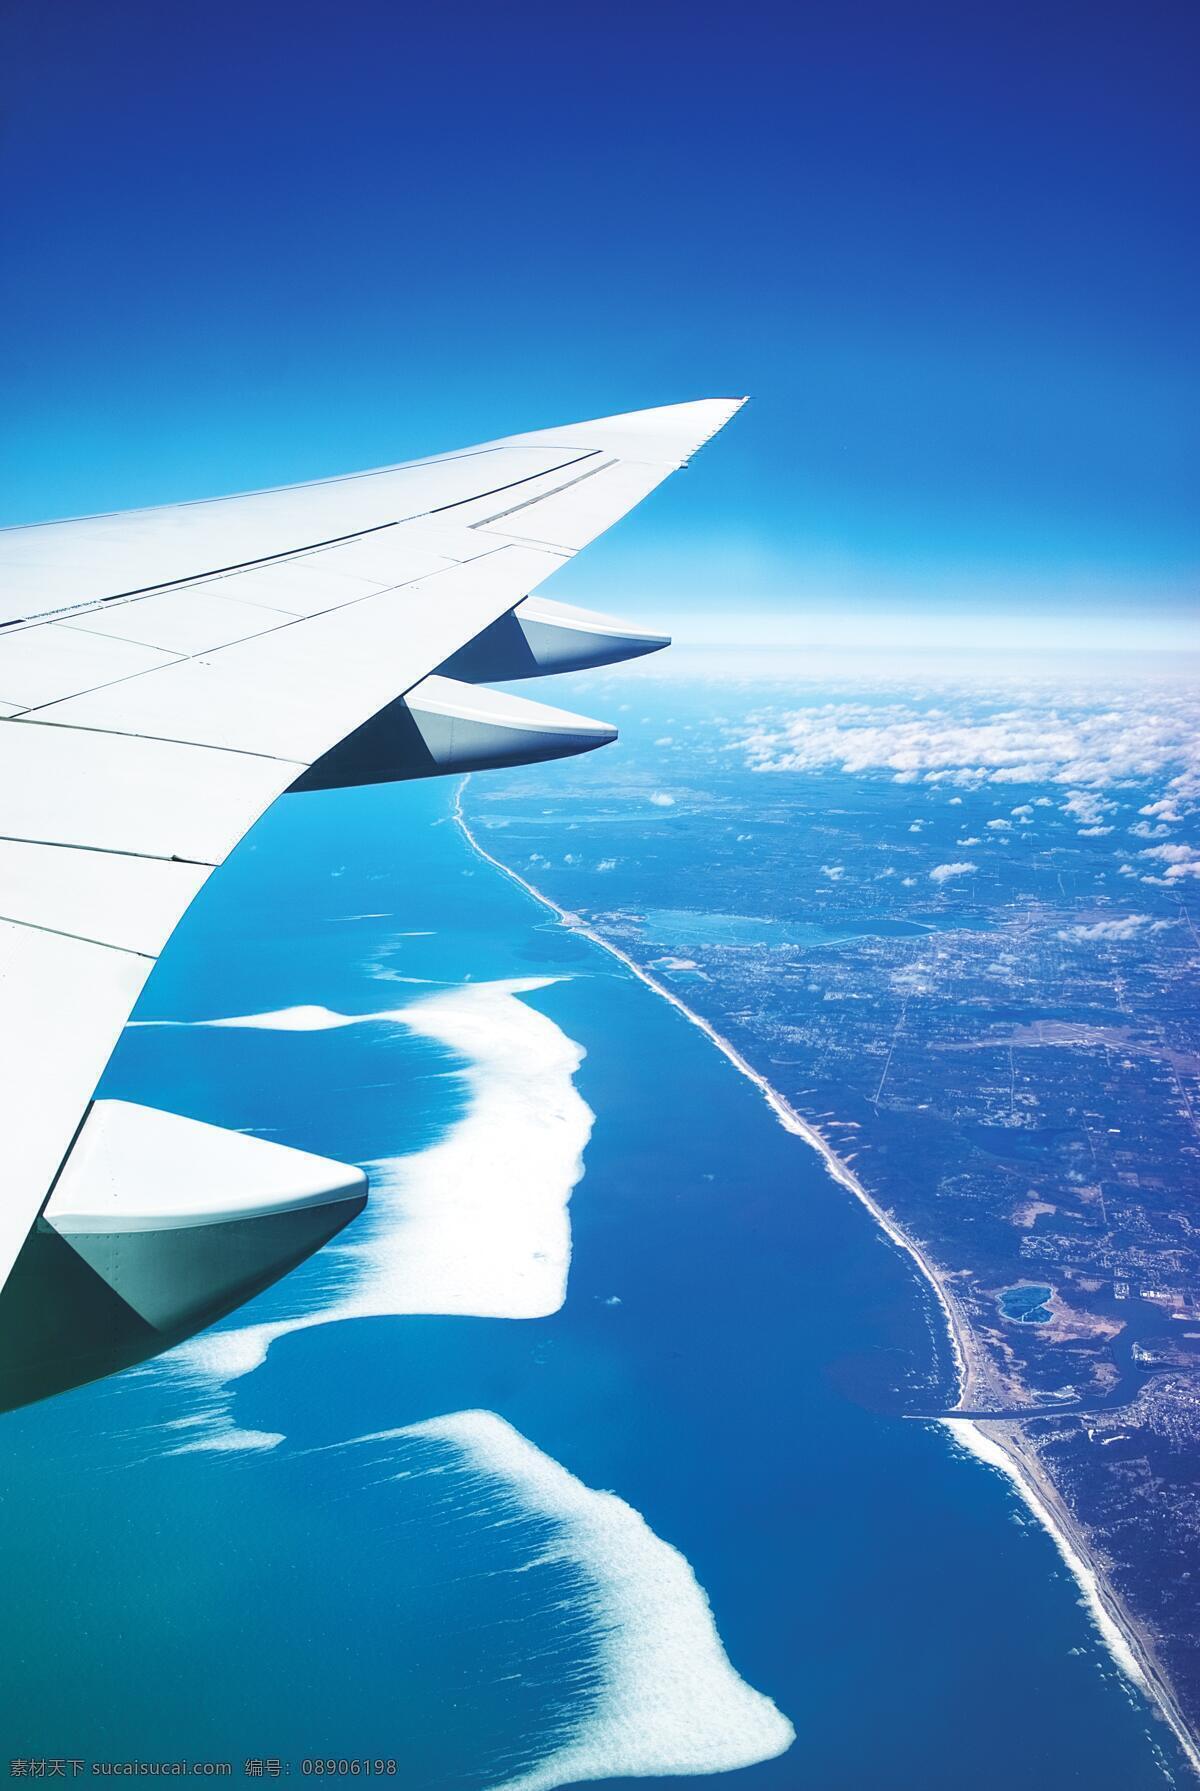 飞机 空中景色 天空风景 喷射 涡轮 飞 运输 客运 空中旅行 飞行 客机 起飞 天空 空客 大型客机 航空 现代科技 交通工具